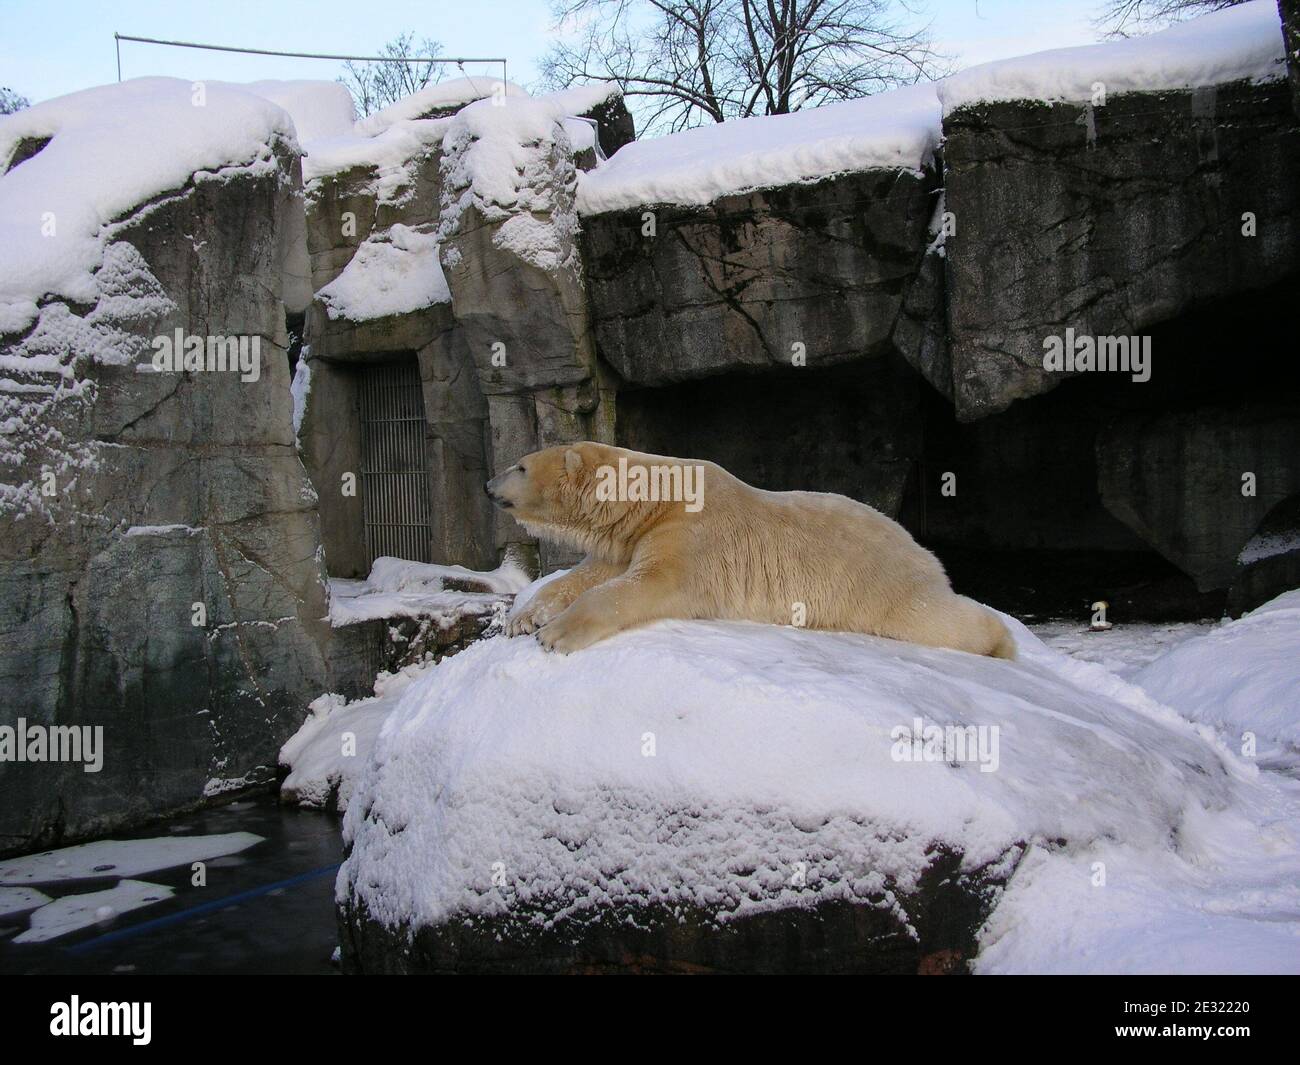 Orso polare godendo di inverno nello Zoo di Copenhagen, Danimarca. L'inverno del 2009/2010 è stato caratterizzato da numerosi e rigidi incantesimi sull'Europa settentrionale e occidentale. Questo inverno insolito si è verificato durante il dibattito pubblico sui cambiamenti climatici, durante e dopo i negoziati sul clima di Copenaghen. Foto Stock